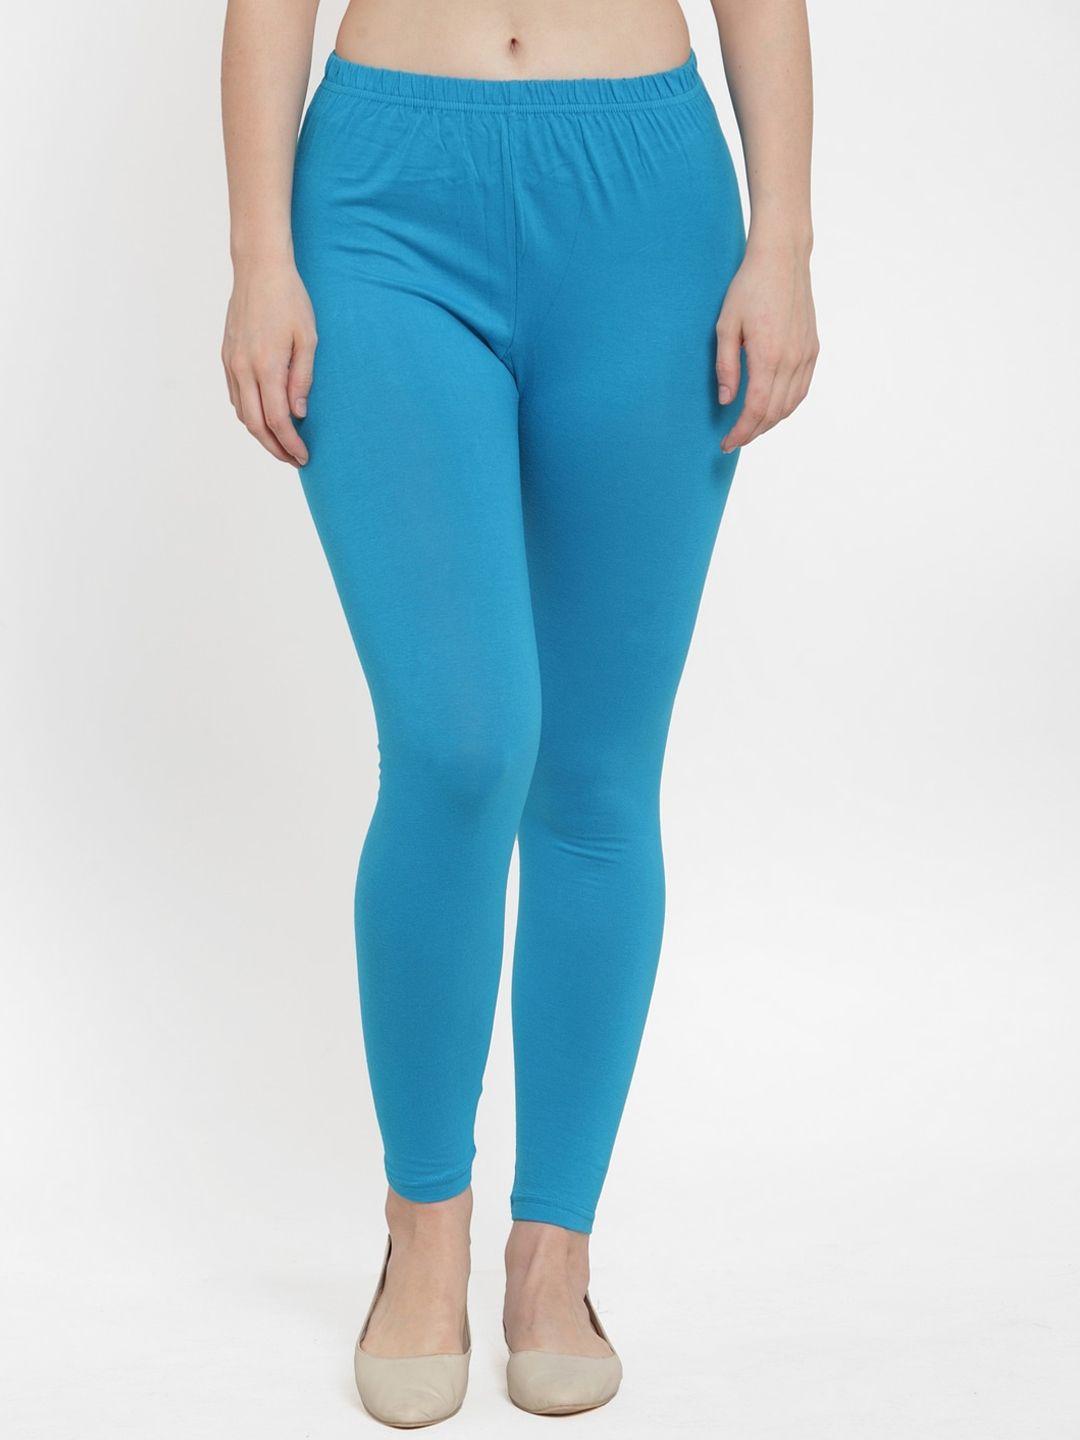 gracit-women-turquiose-blue-solid-cotton-ankle-length-leggings